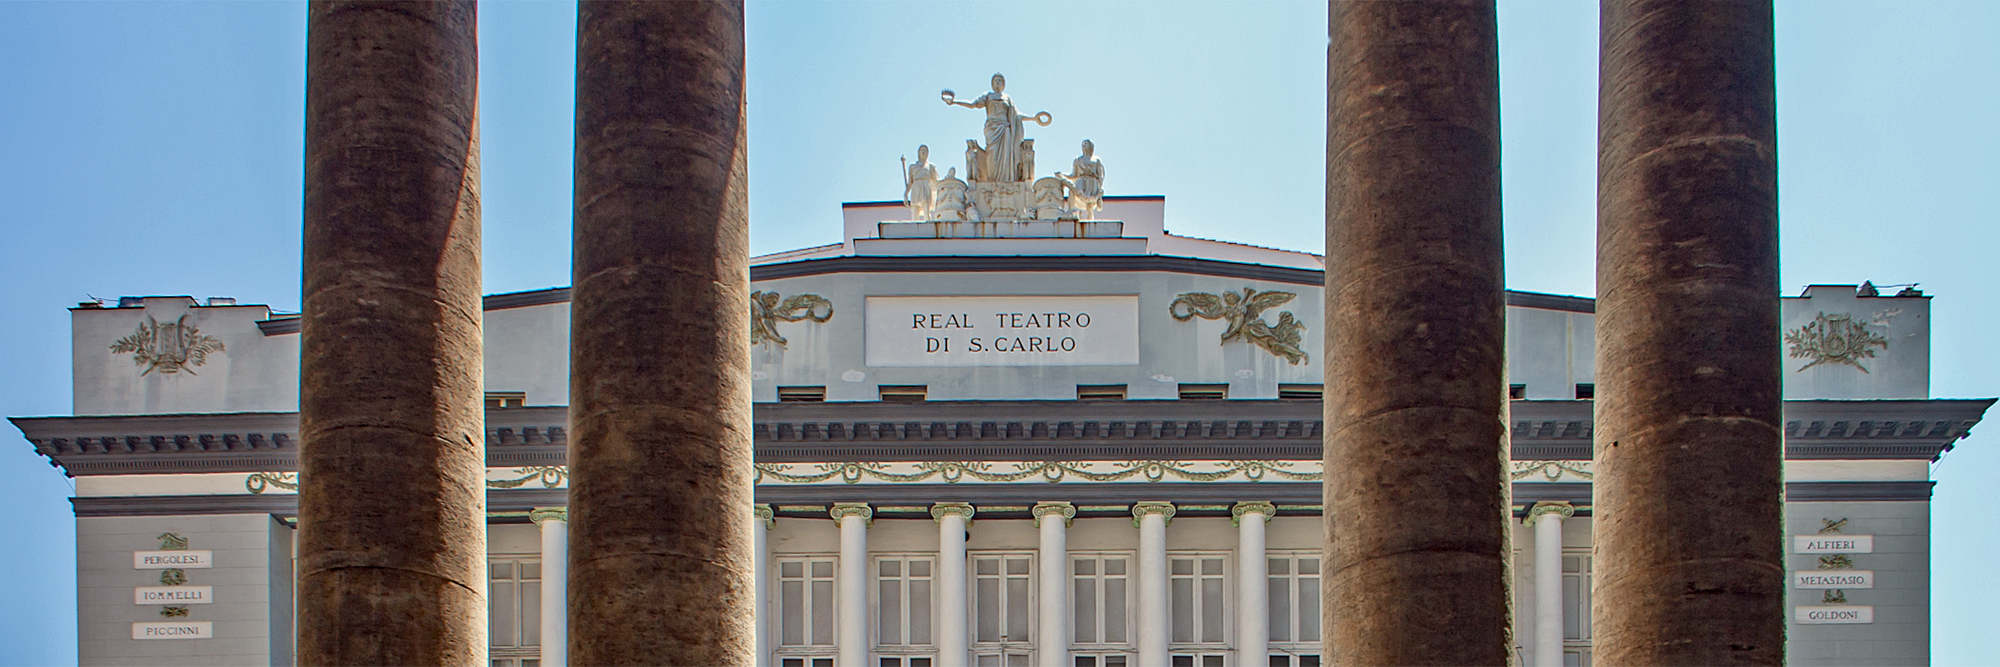 Teatro San Carlo, Neapel